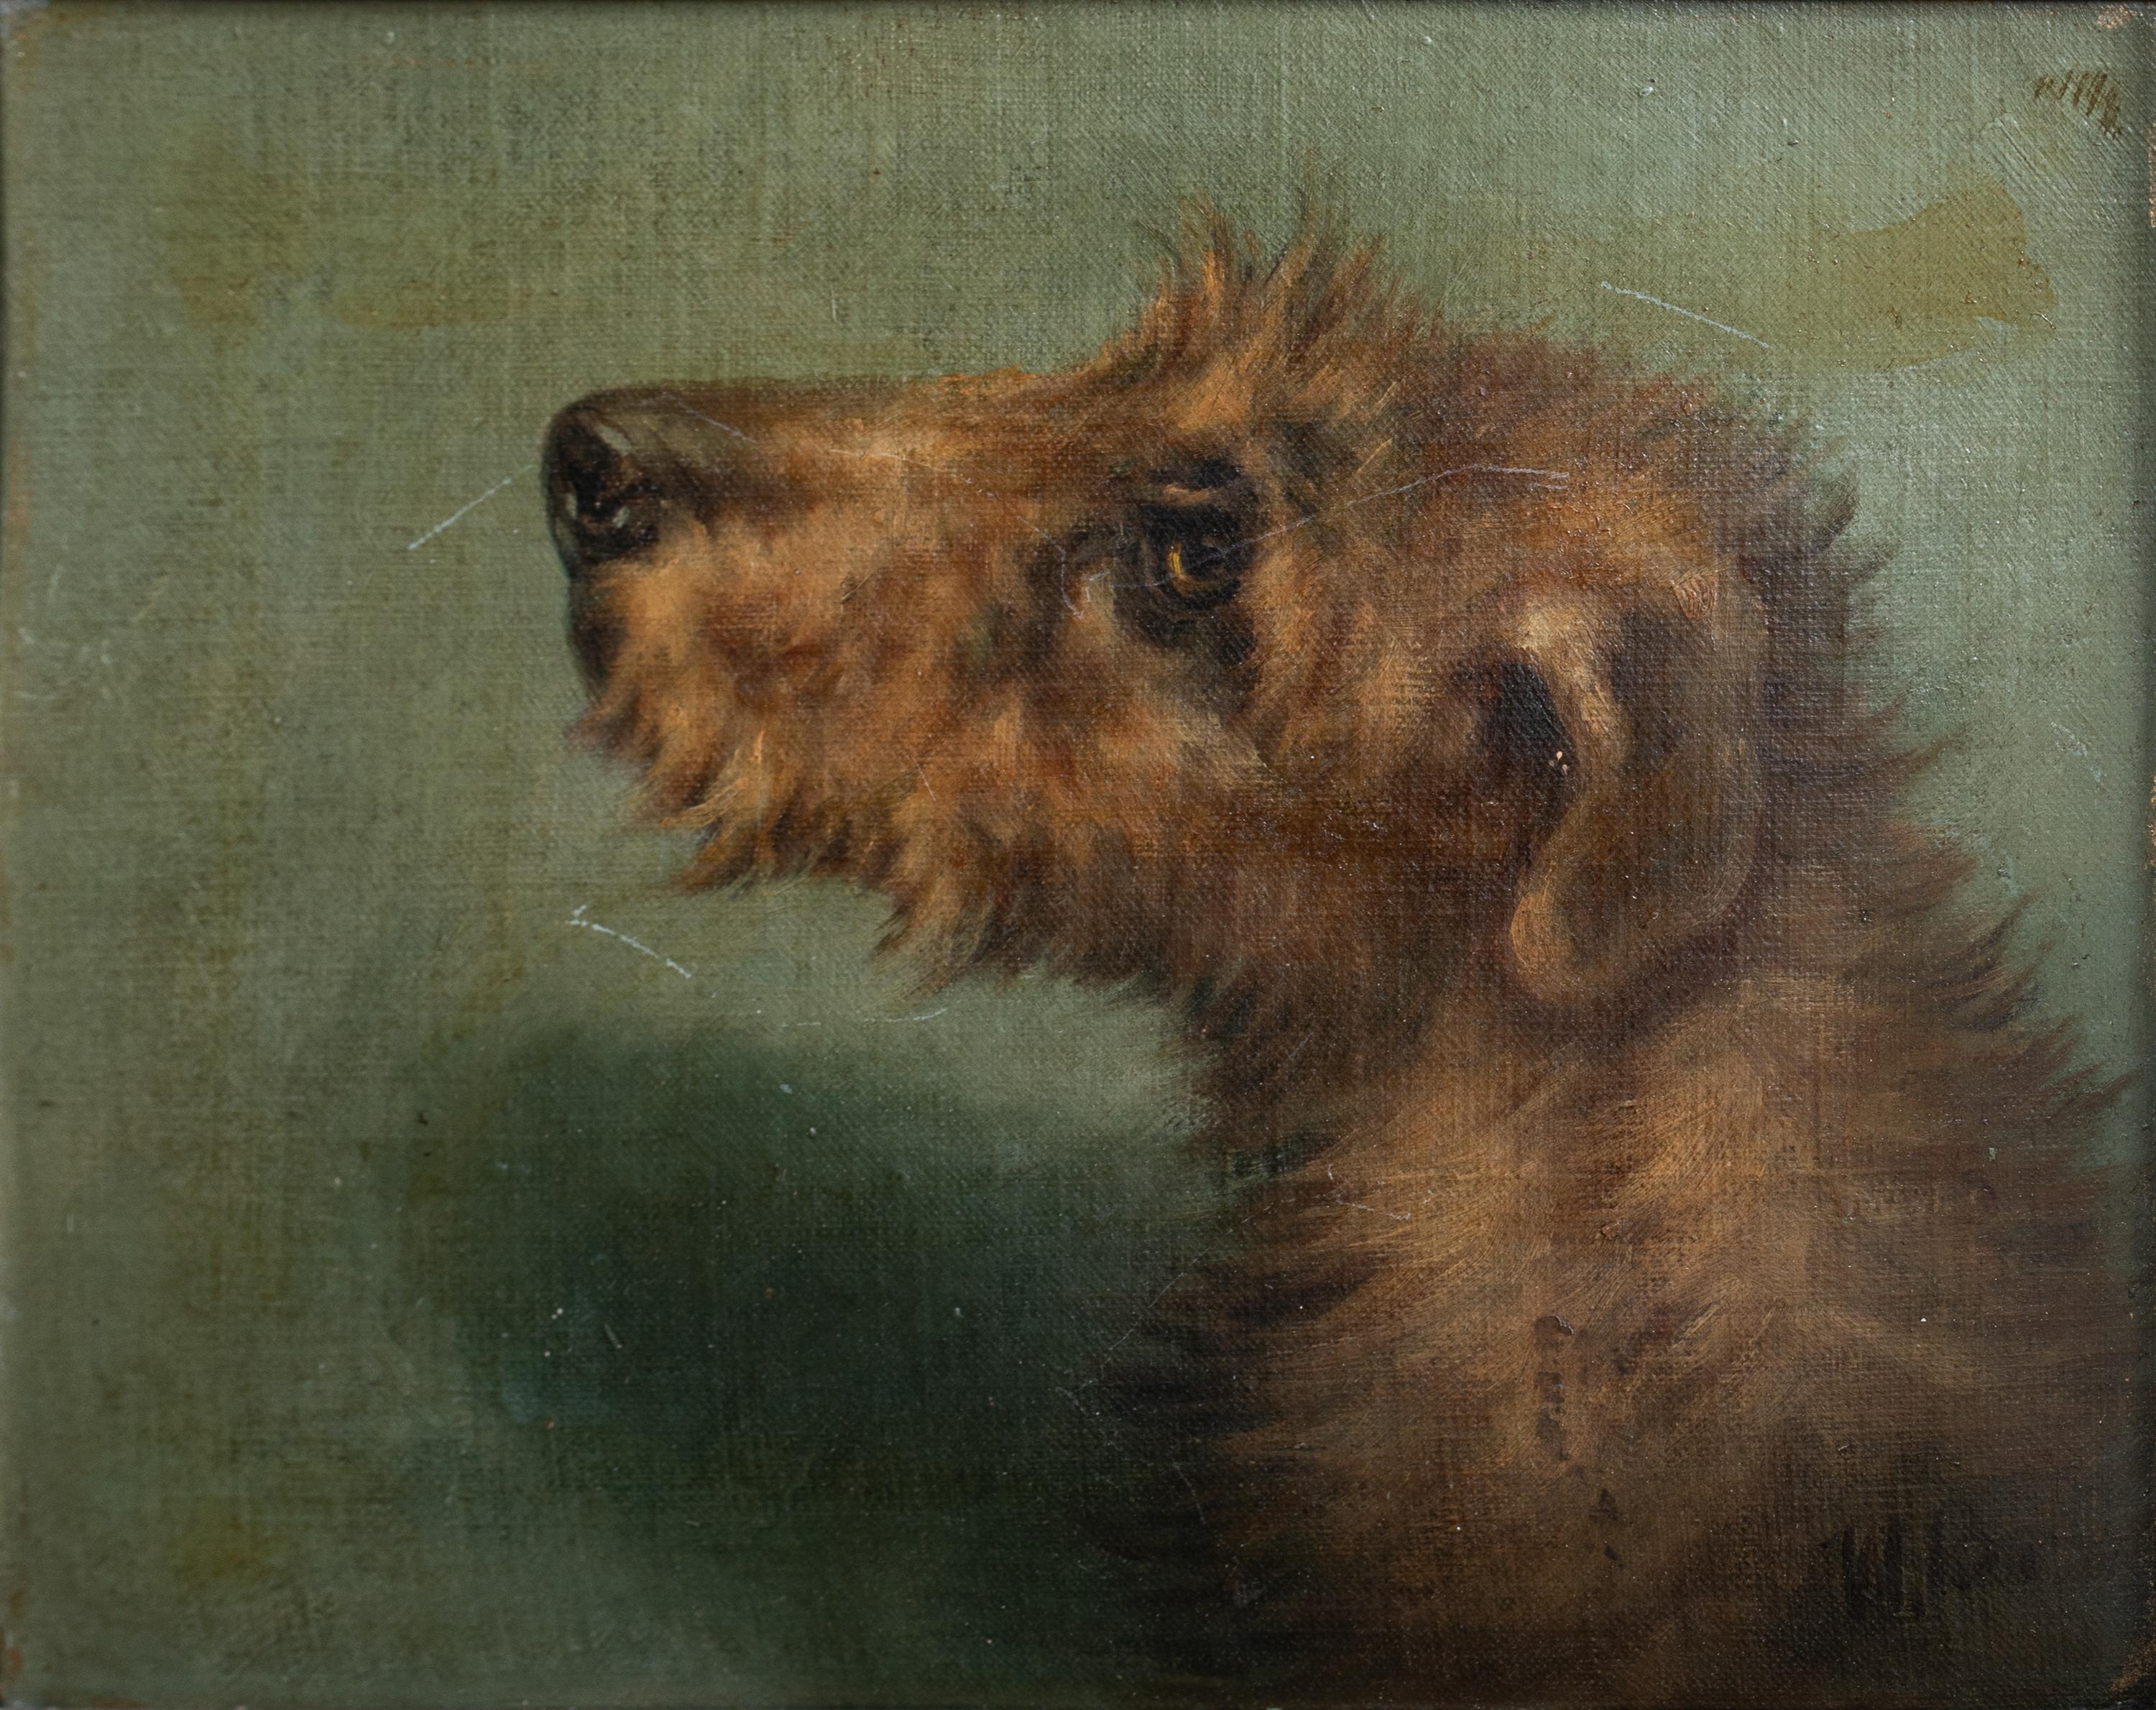 Portrait d'un terrier irlandais, 19e siècle

Signé en haut à droite « EMMS »

Circa 1900 Portrait anglais de la tête d'un chien terrier irlandais, huile sur panneau, signé 